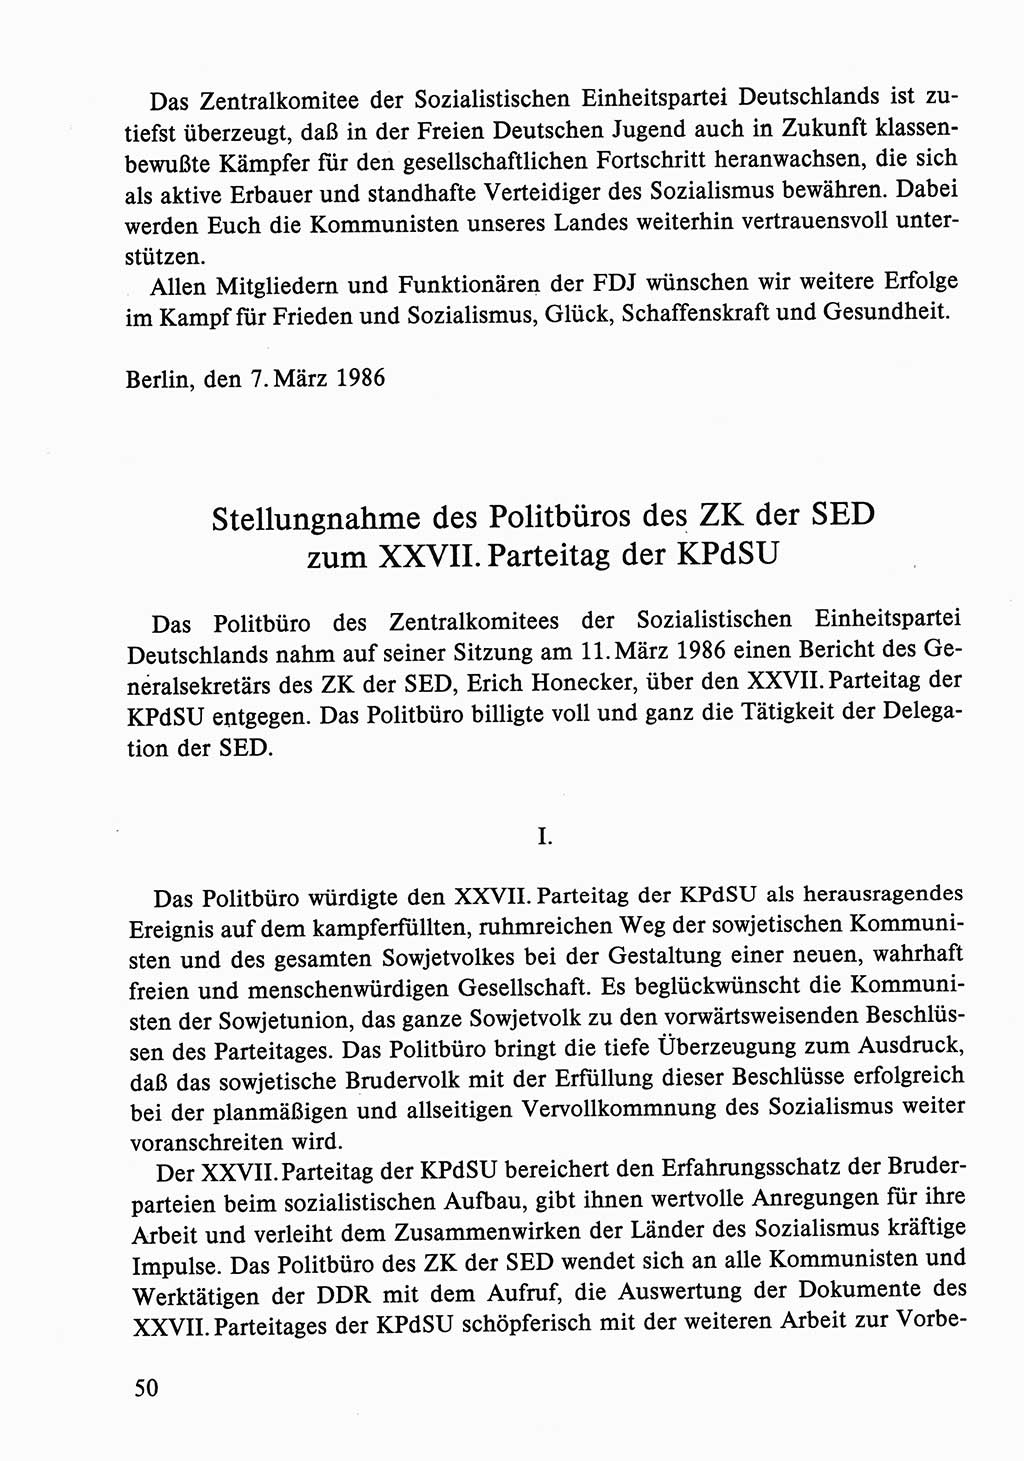 Dokumente der Sozialistischen Einheitspartei Deutschlands (SED) [Deutsche Demokratische Republik (DDR)] 1986-1987, Seite 50 (Dok. SED DDR 1986-1987, S. 50)